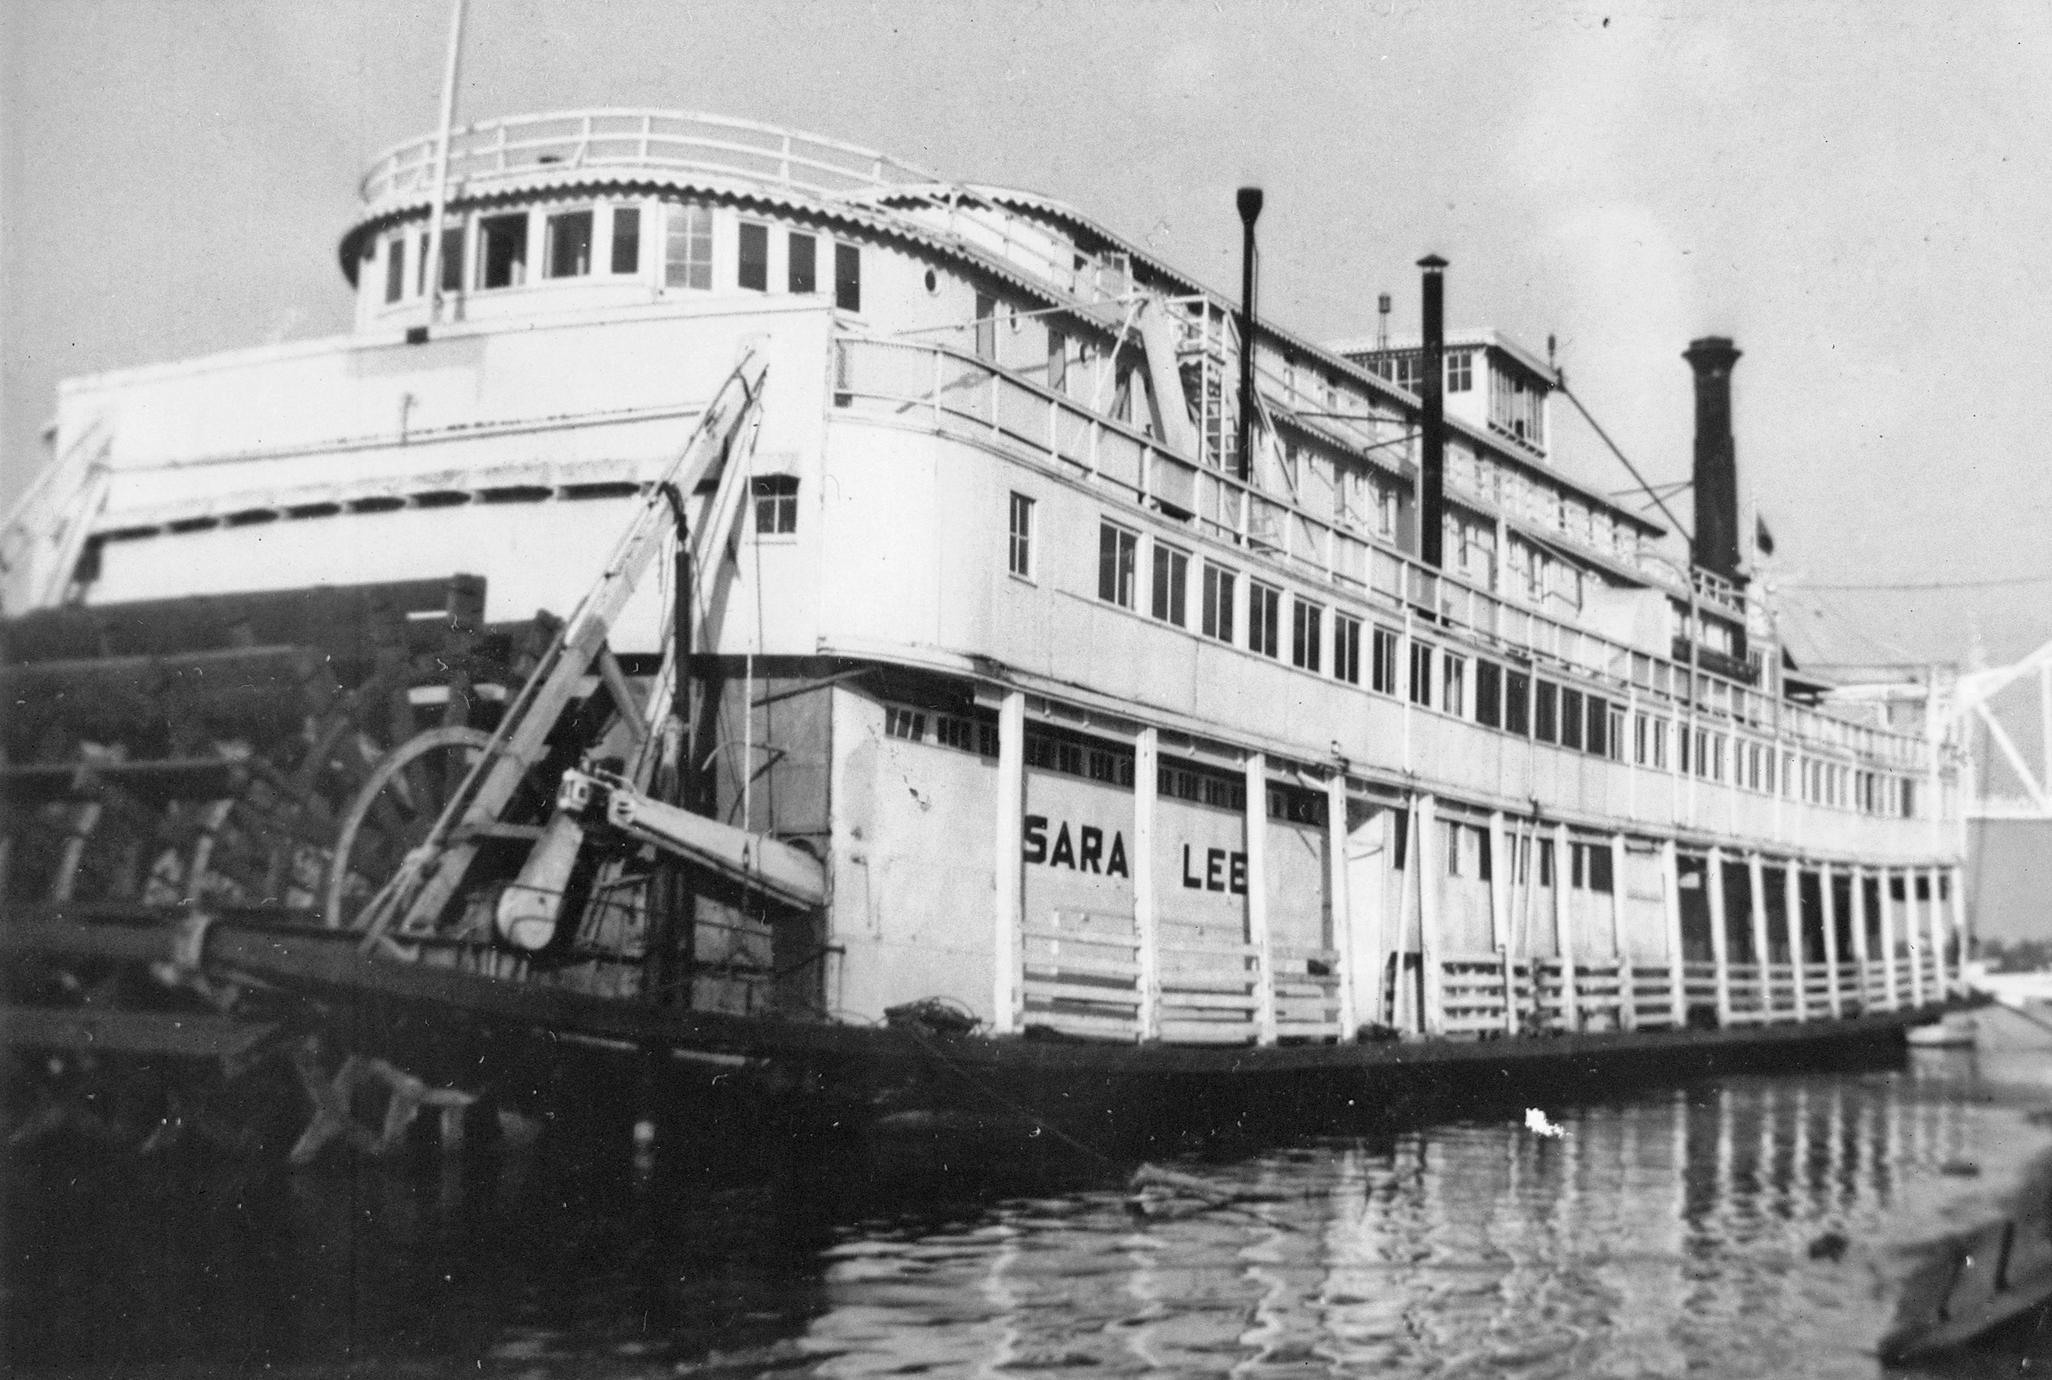 Sarah Lee (Floating hotel, 1952-1955)